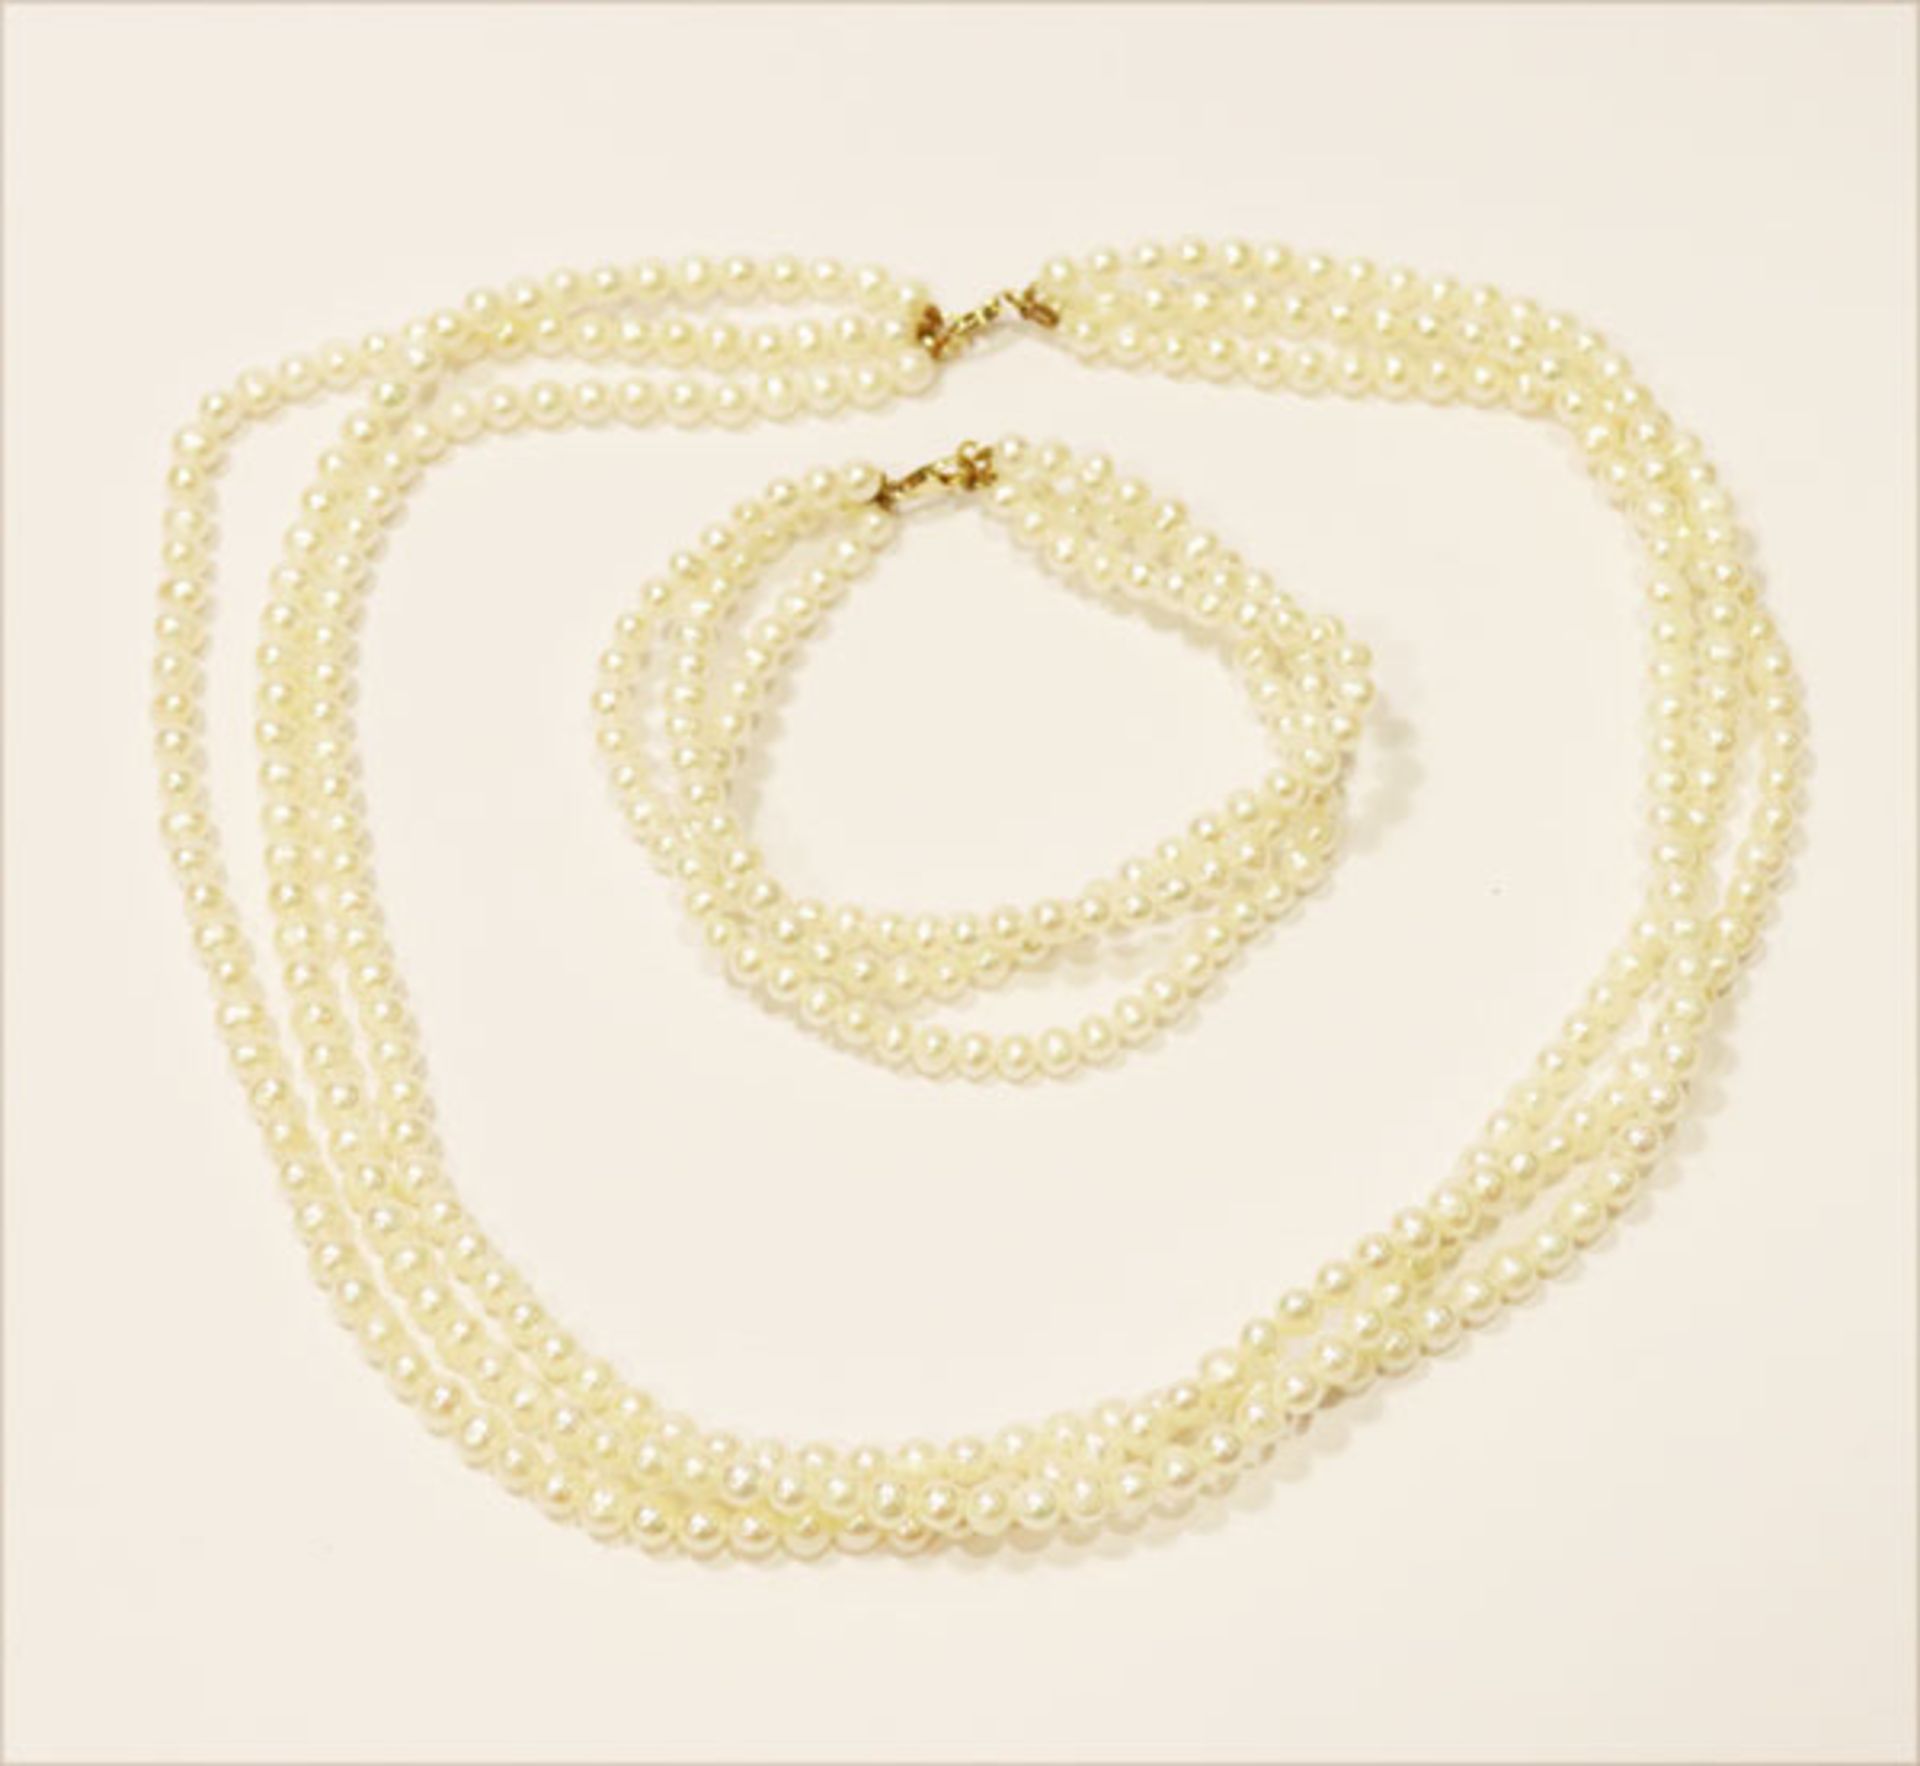 3-reihige Perlenkette, L 44 cm, und Armband, L 18 cm, beides mit 14 k Gelbgold Schließen